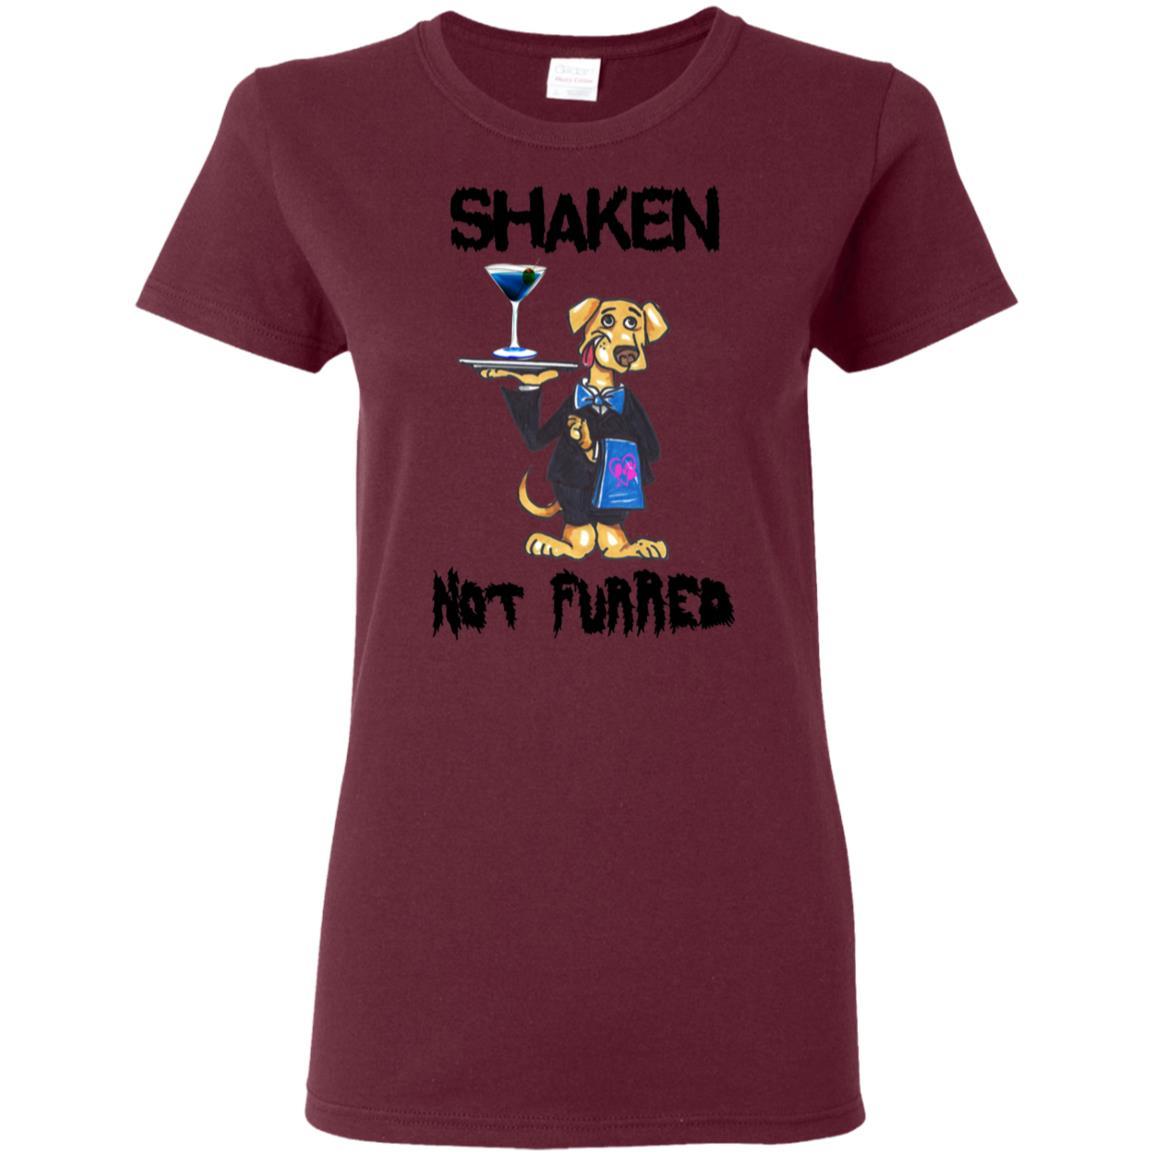 T-Shirts Maroon / S WineyBitches.Co "Shaken Not Furred" Ladies' 5.3 oz. T-Shirt WineyBitchesCo